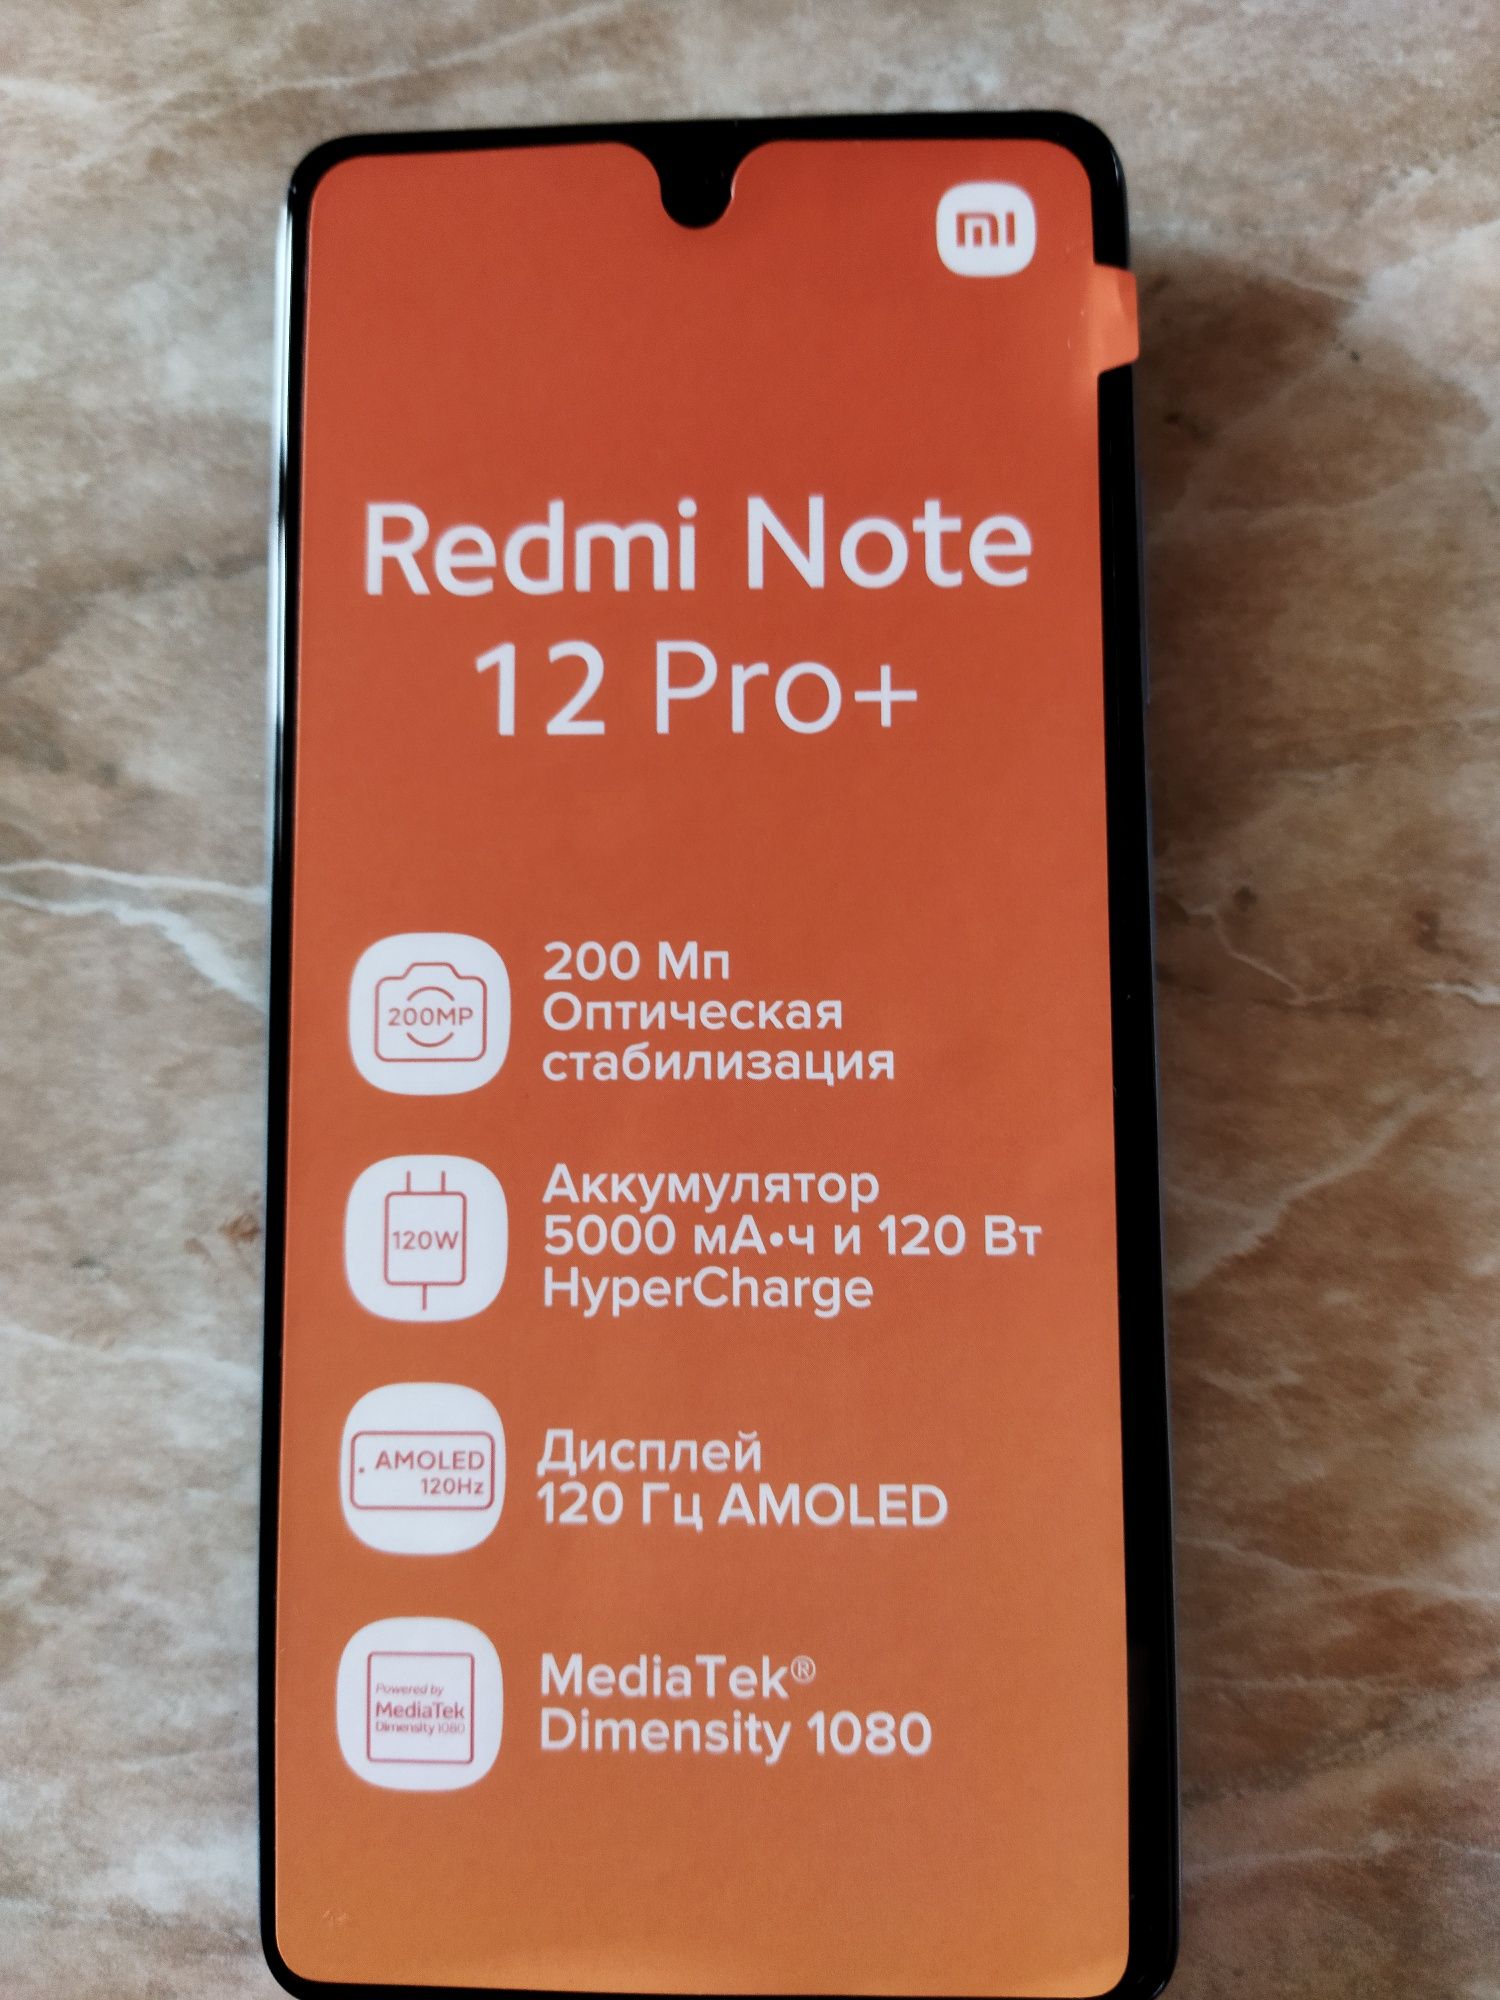 Redmi Note 12 pro plus